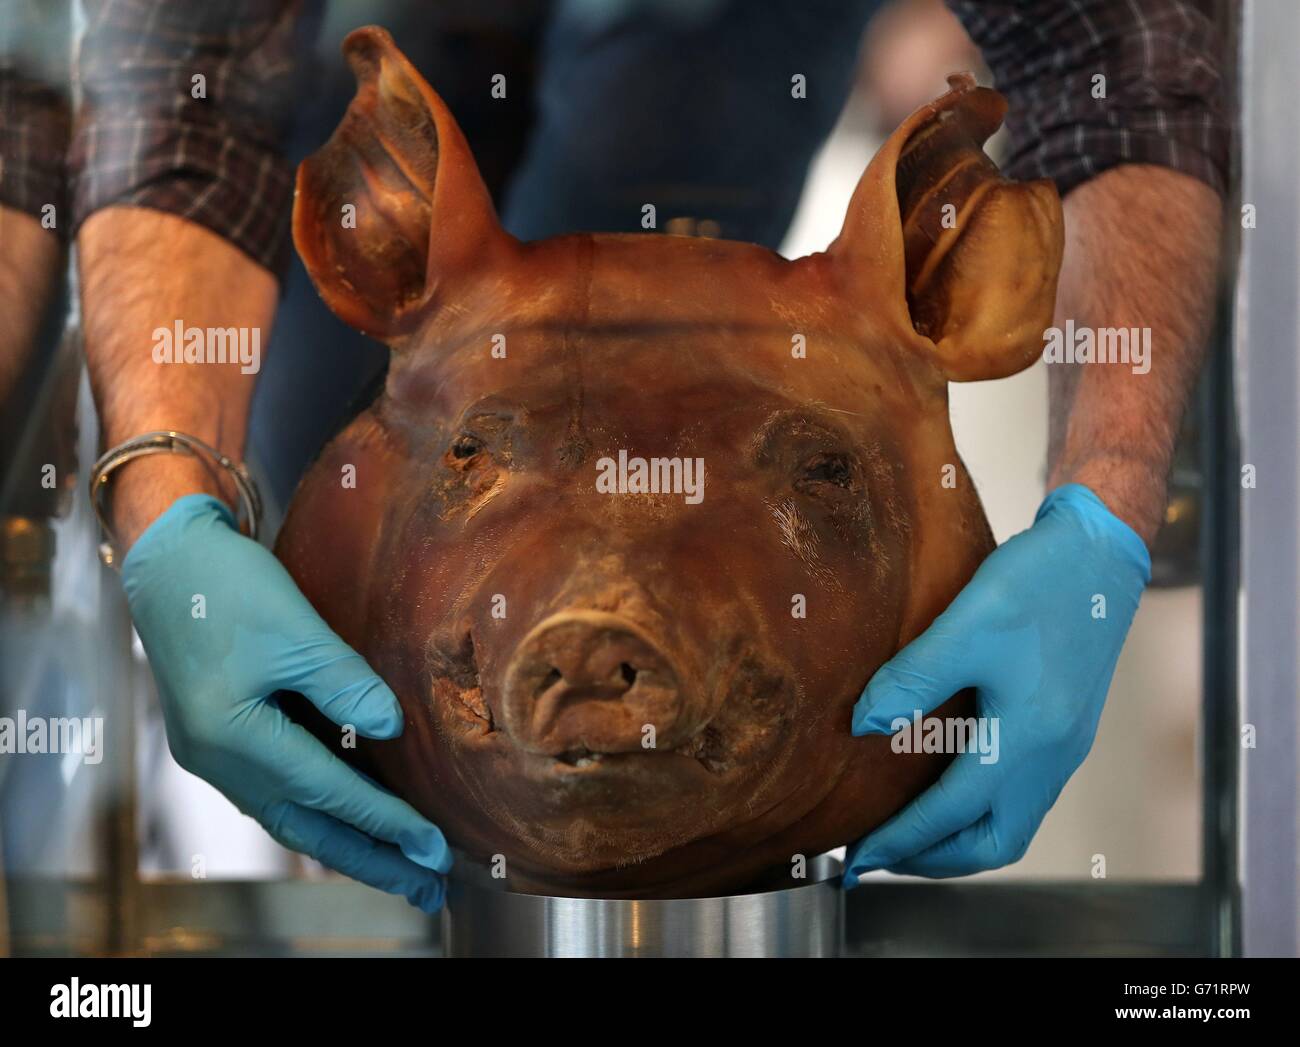 El chef de la estrella Michelin Kevin Thornton sostiene una cabeza de cerdo de su instalación 'Pig Heads en Poitin durante una vista previa de prensa de Fat: Es Delicious, un laboratorio libre en la galería que explora el bueno, el malo y la belleza de la grasa en la galería de la ciencia en Trinity College. Foto de stock